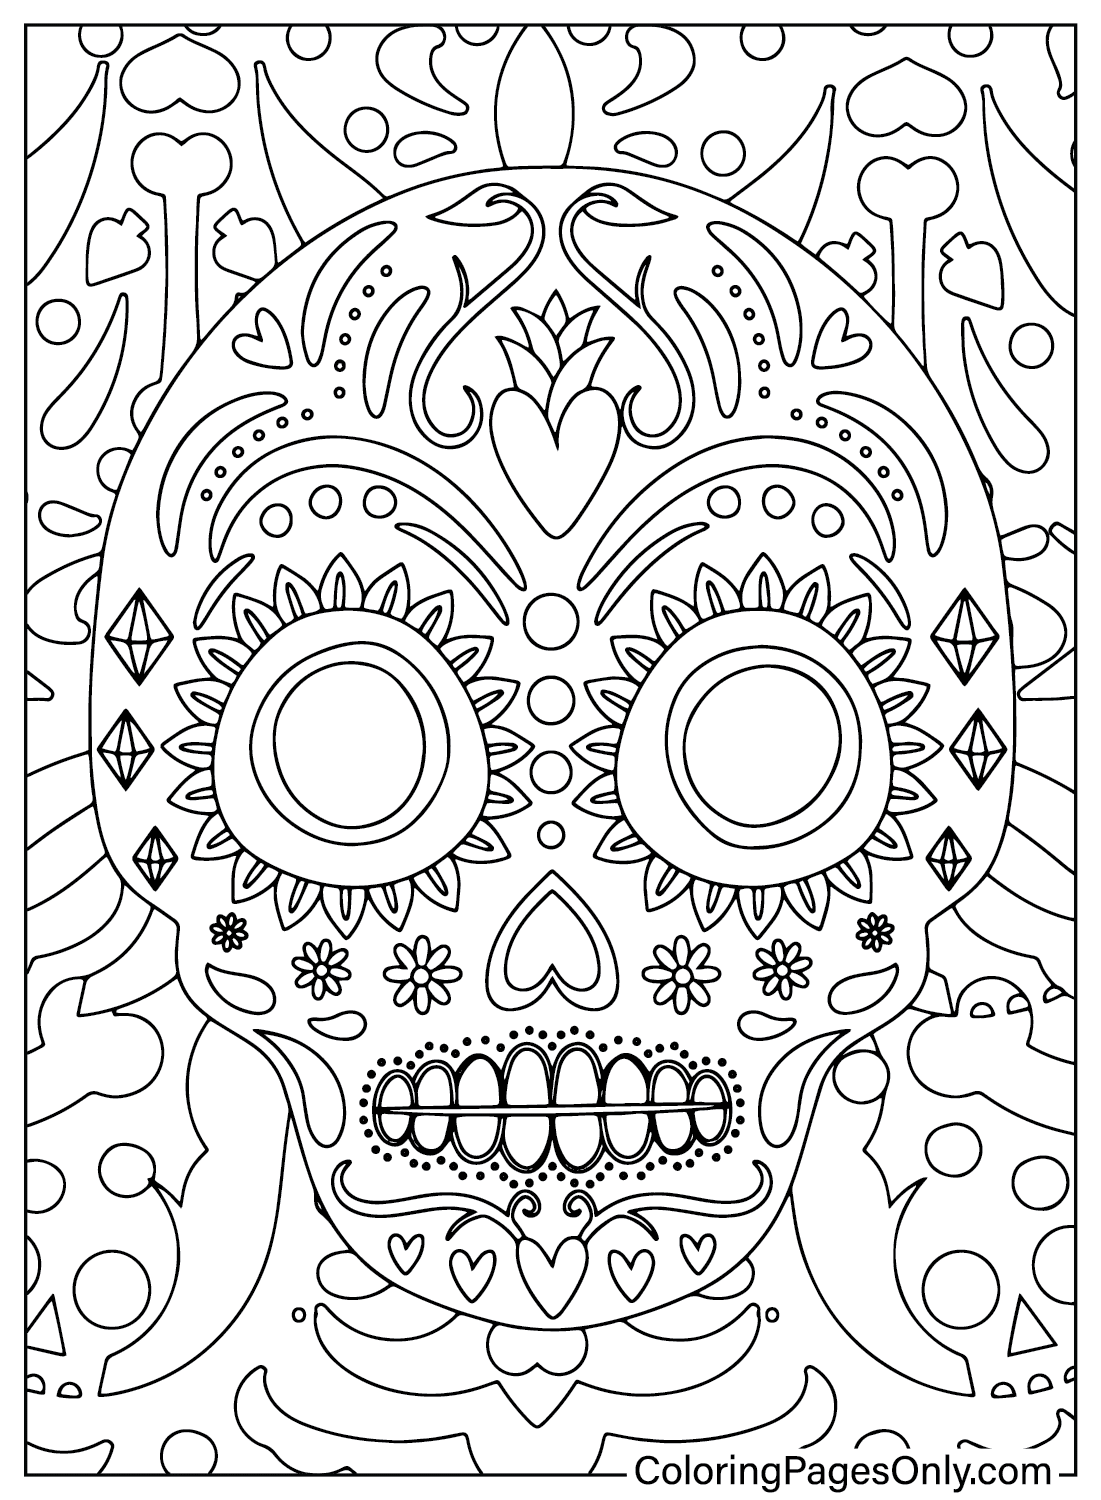 Página para colorear imprimible del Día de los Muertos del Día de los Muertos